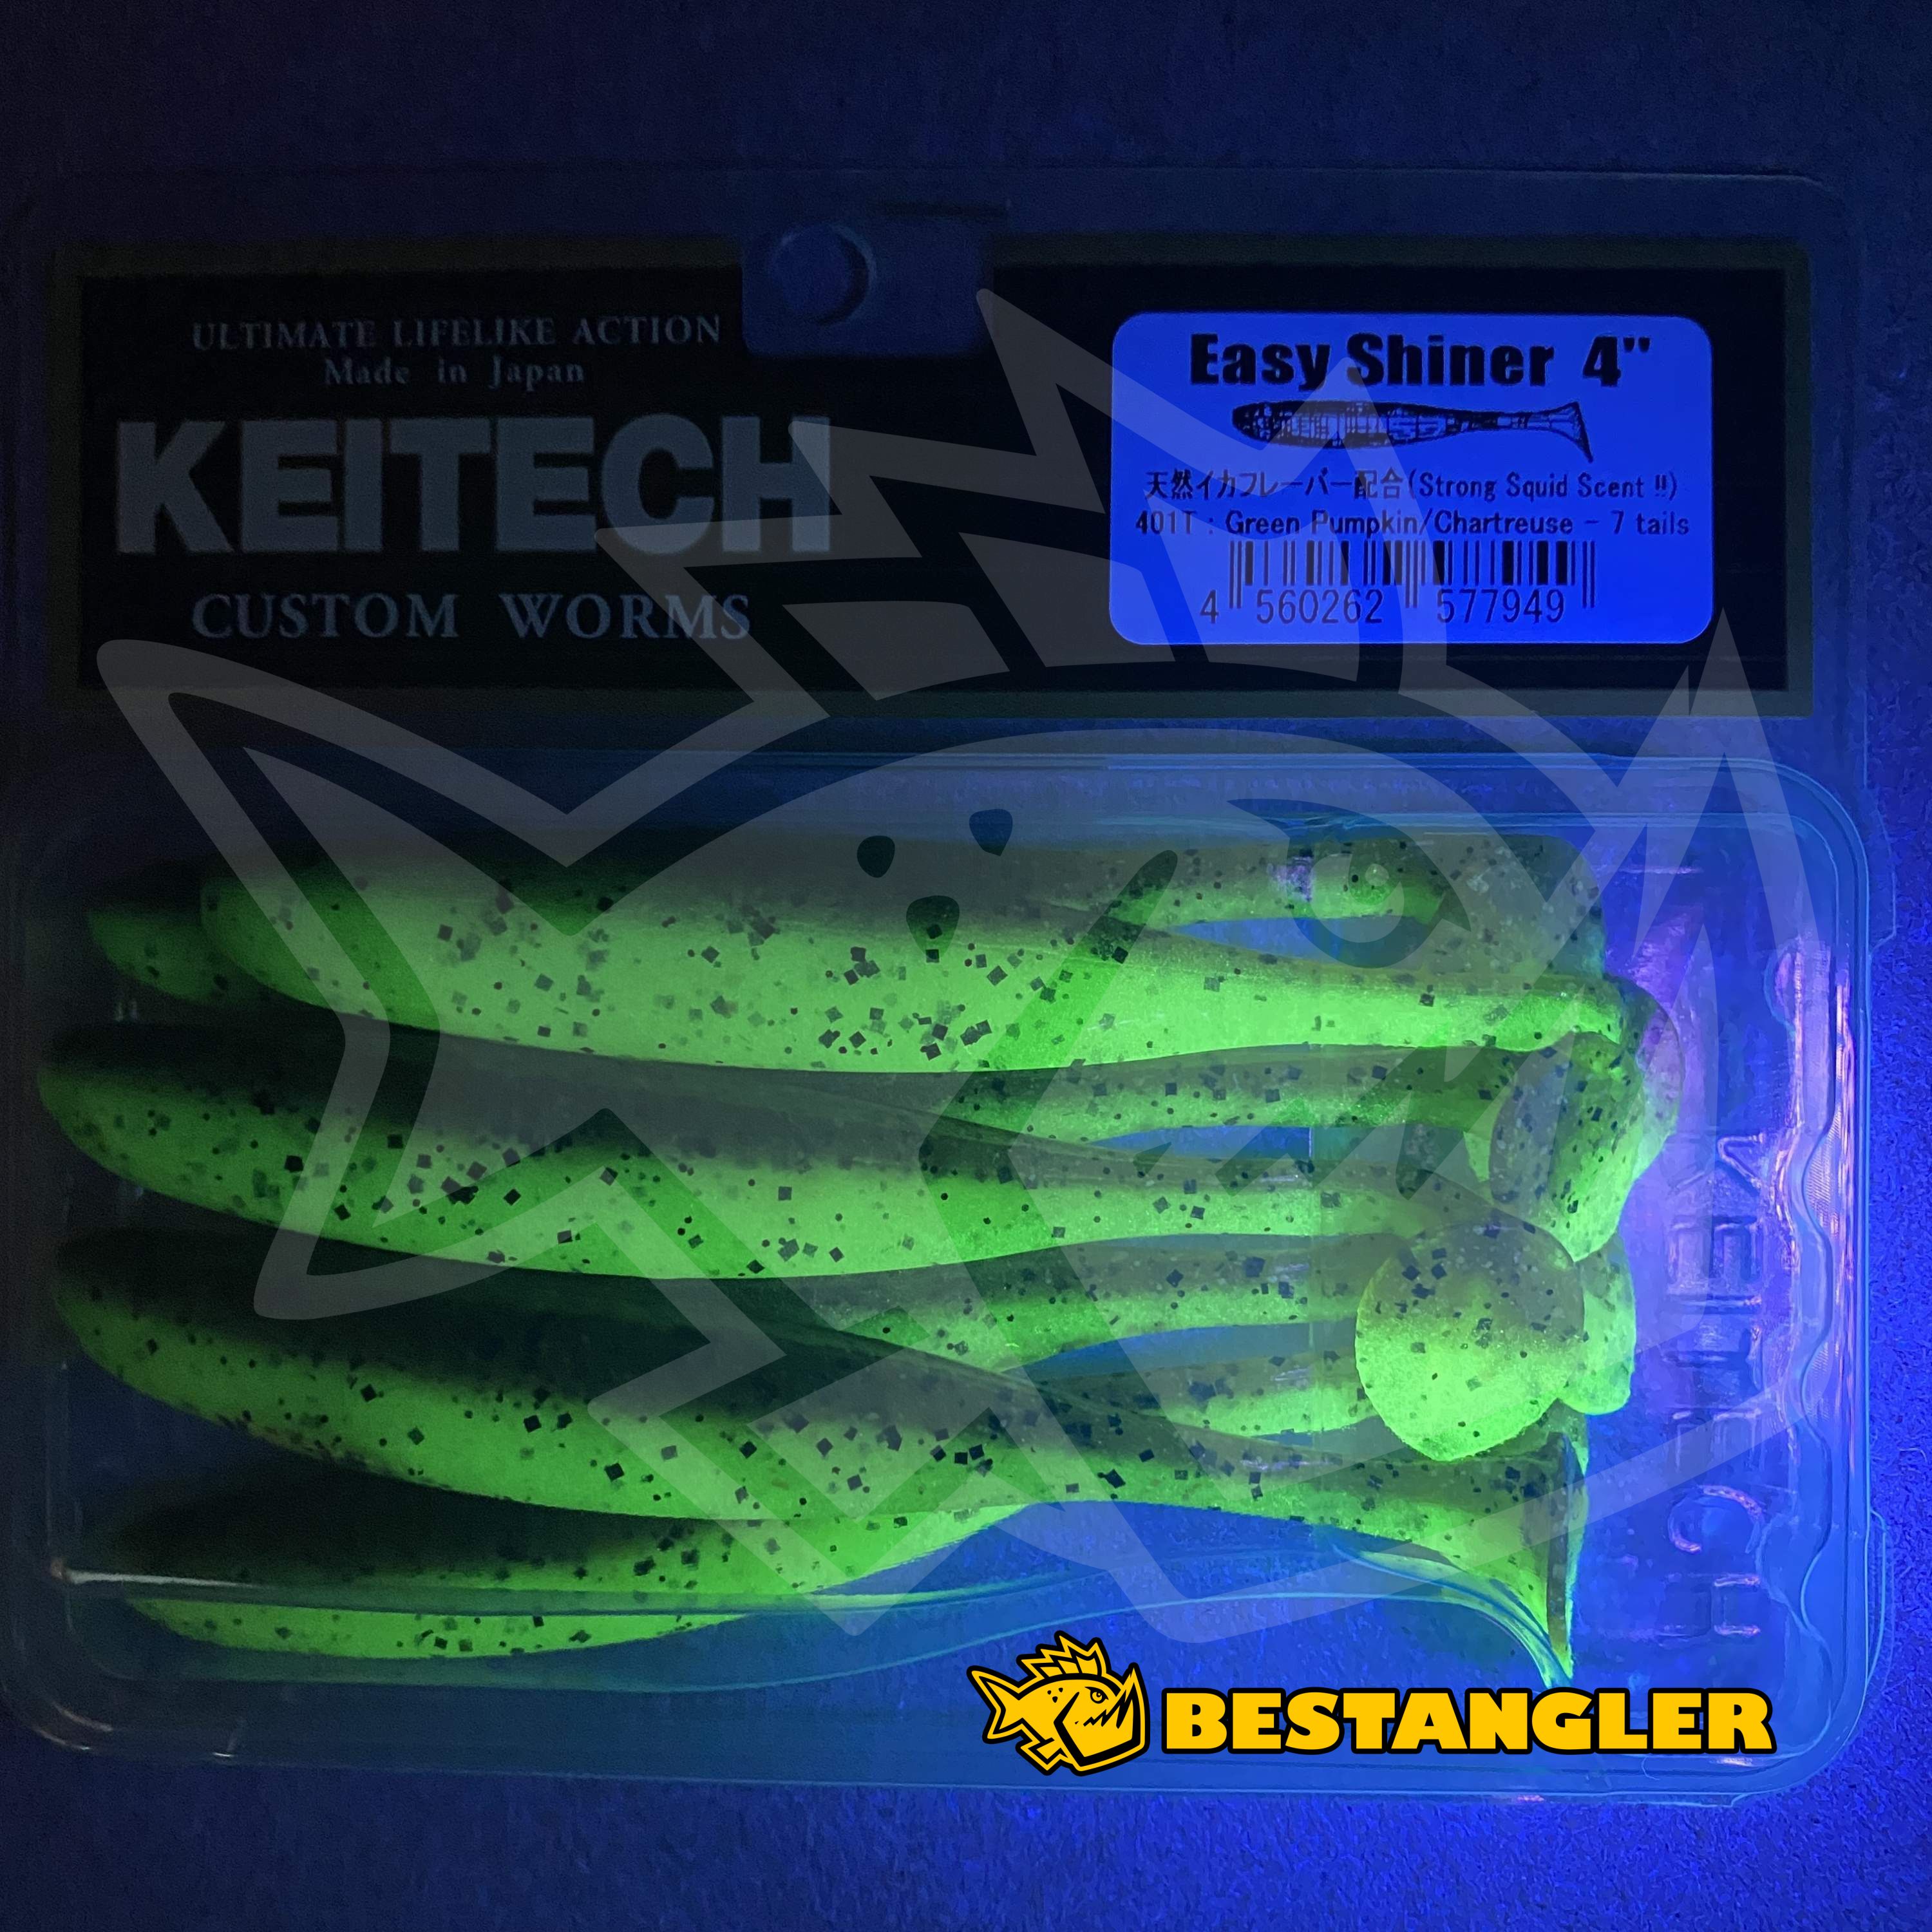 Hecht 4,5 " Keitech Easy Shiner Vert Pumpkin Chartreuse 11,5cm Hecht Sandre 